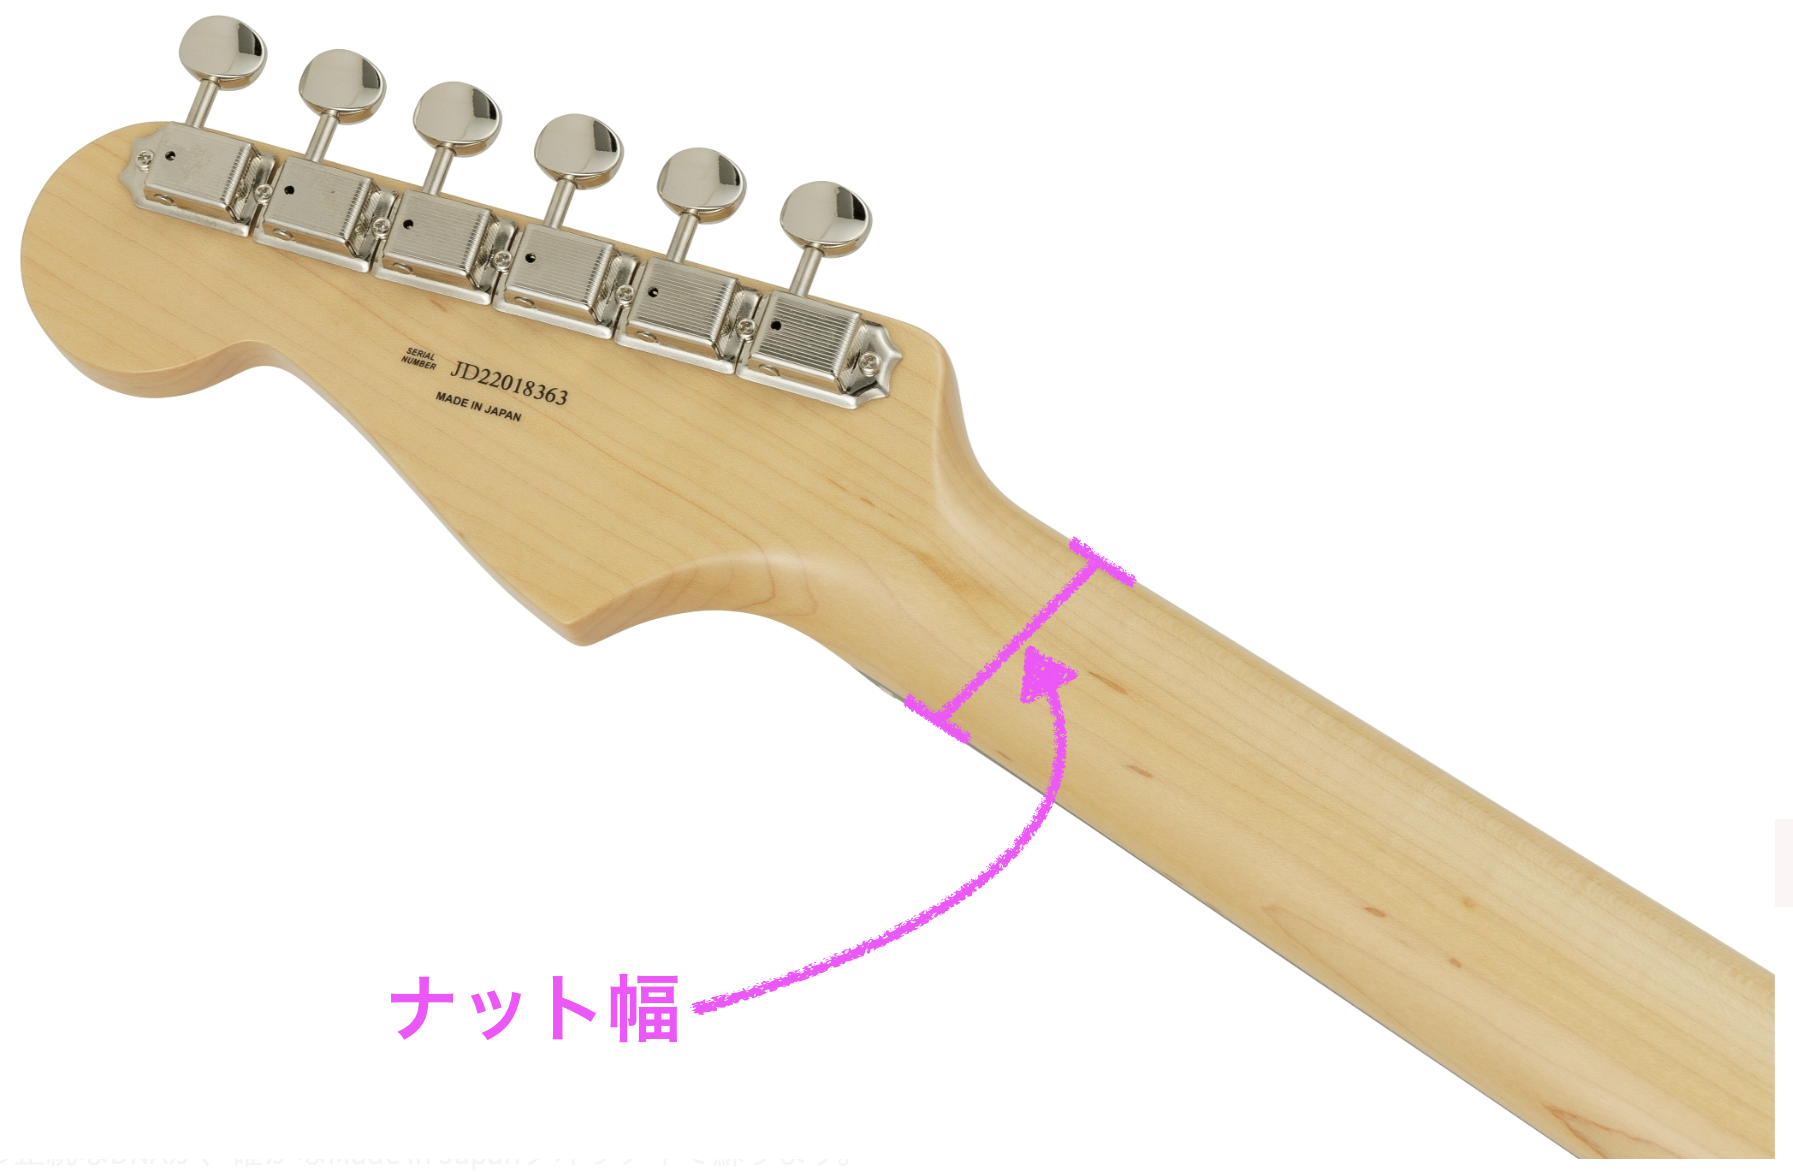 Fender（フェンダー）・ストラトキャスターの特徴とモデル選びについて